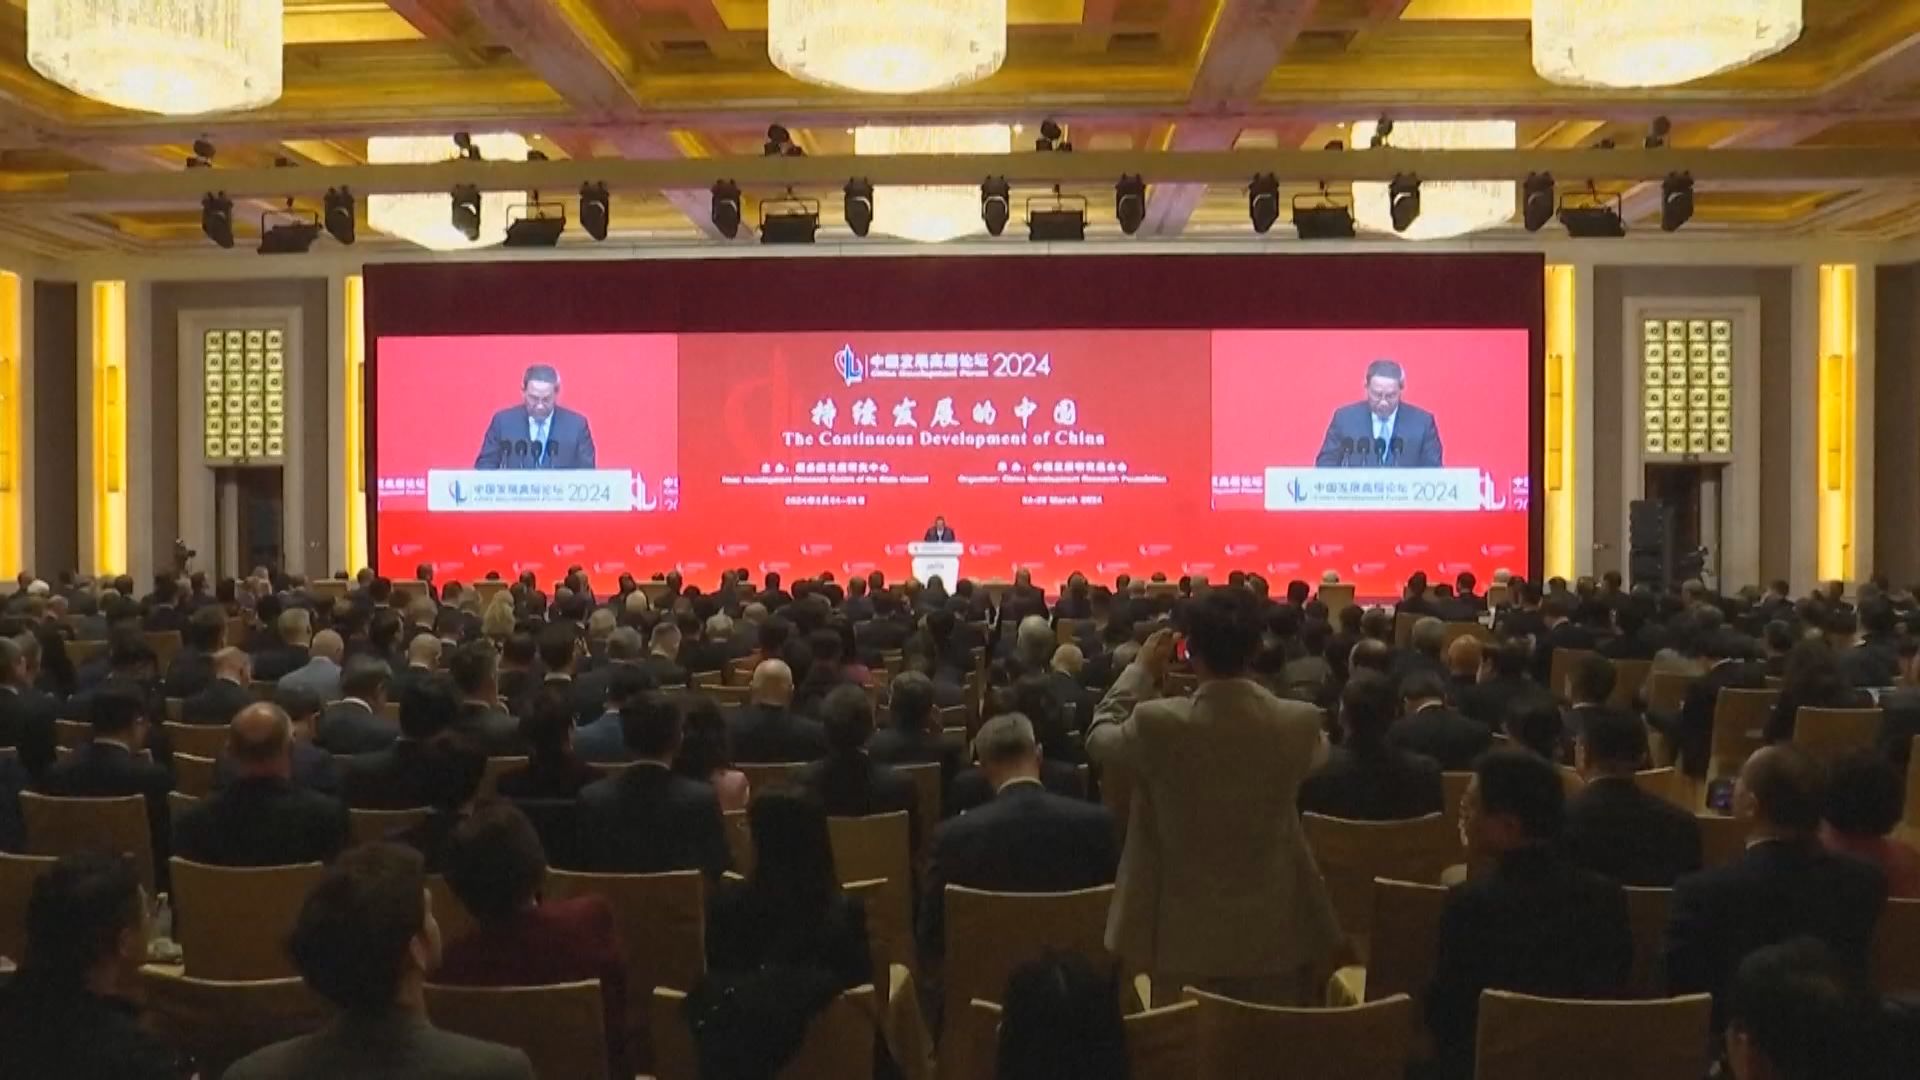 中國發展高層論壇 李強指中國經濟持續向好